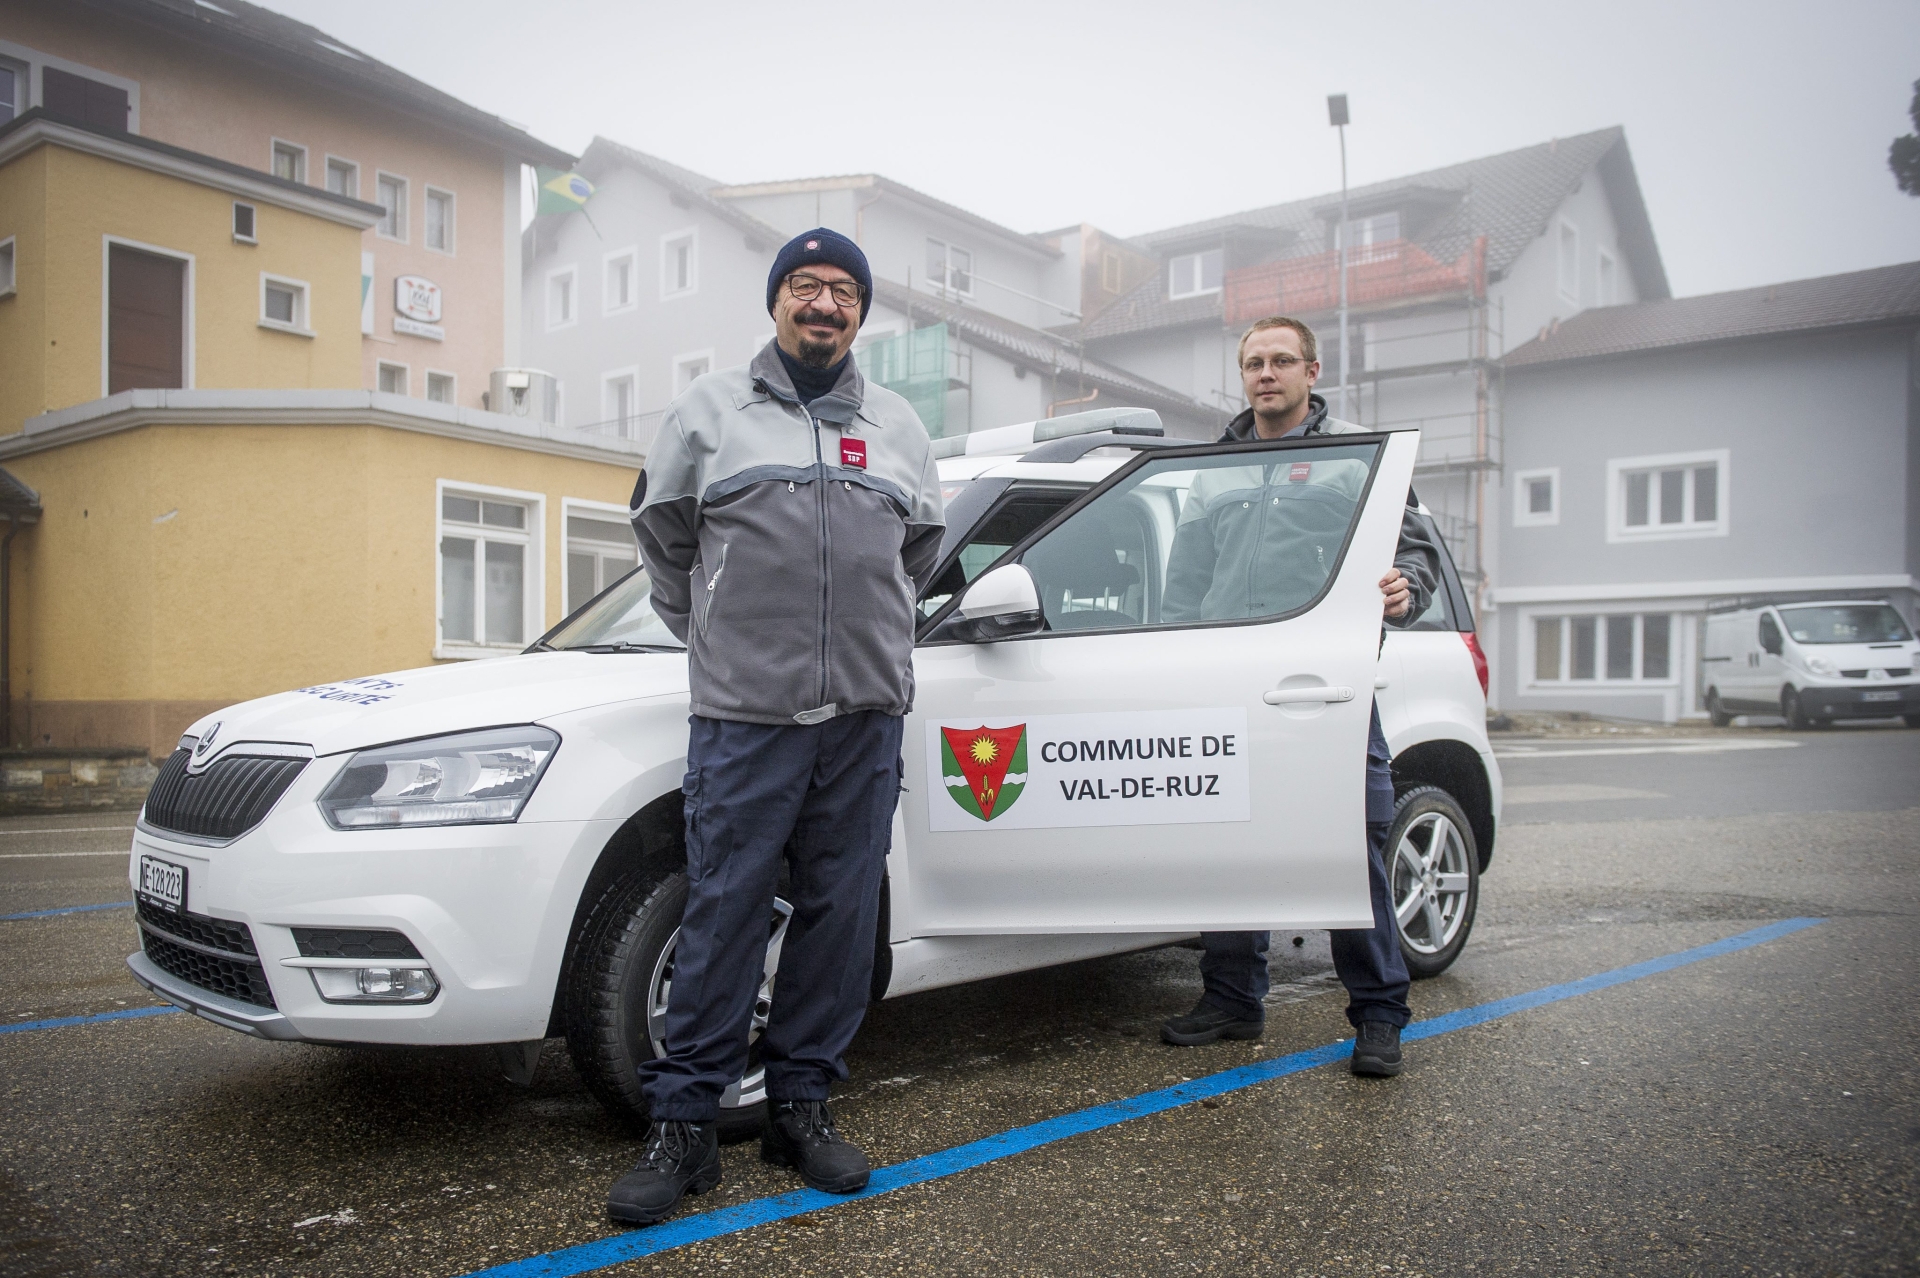 Depuis 2014, date de la photo, les agents de sécurité chaux-de-fonniers travaillent aussi à Val-de-Ruz.